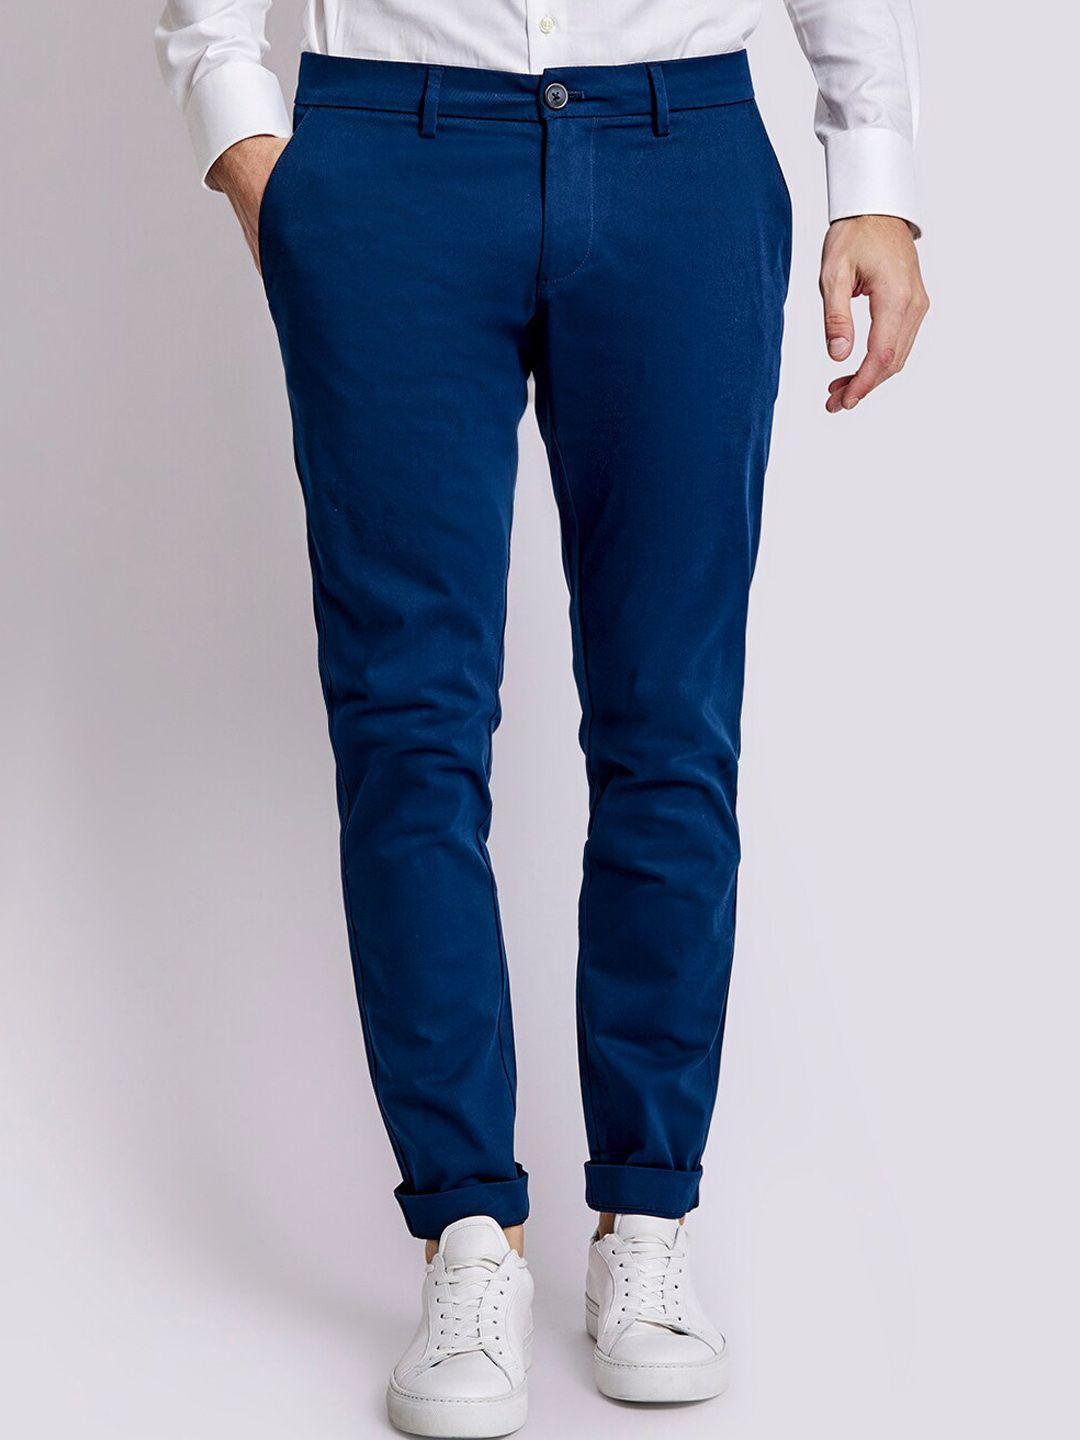 bruun & stengade men blue slim fit chinos trousers